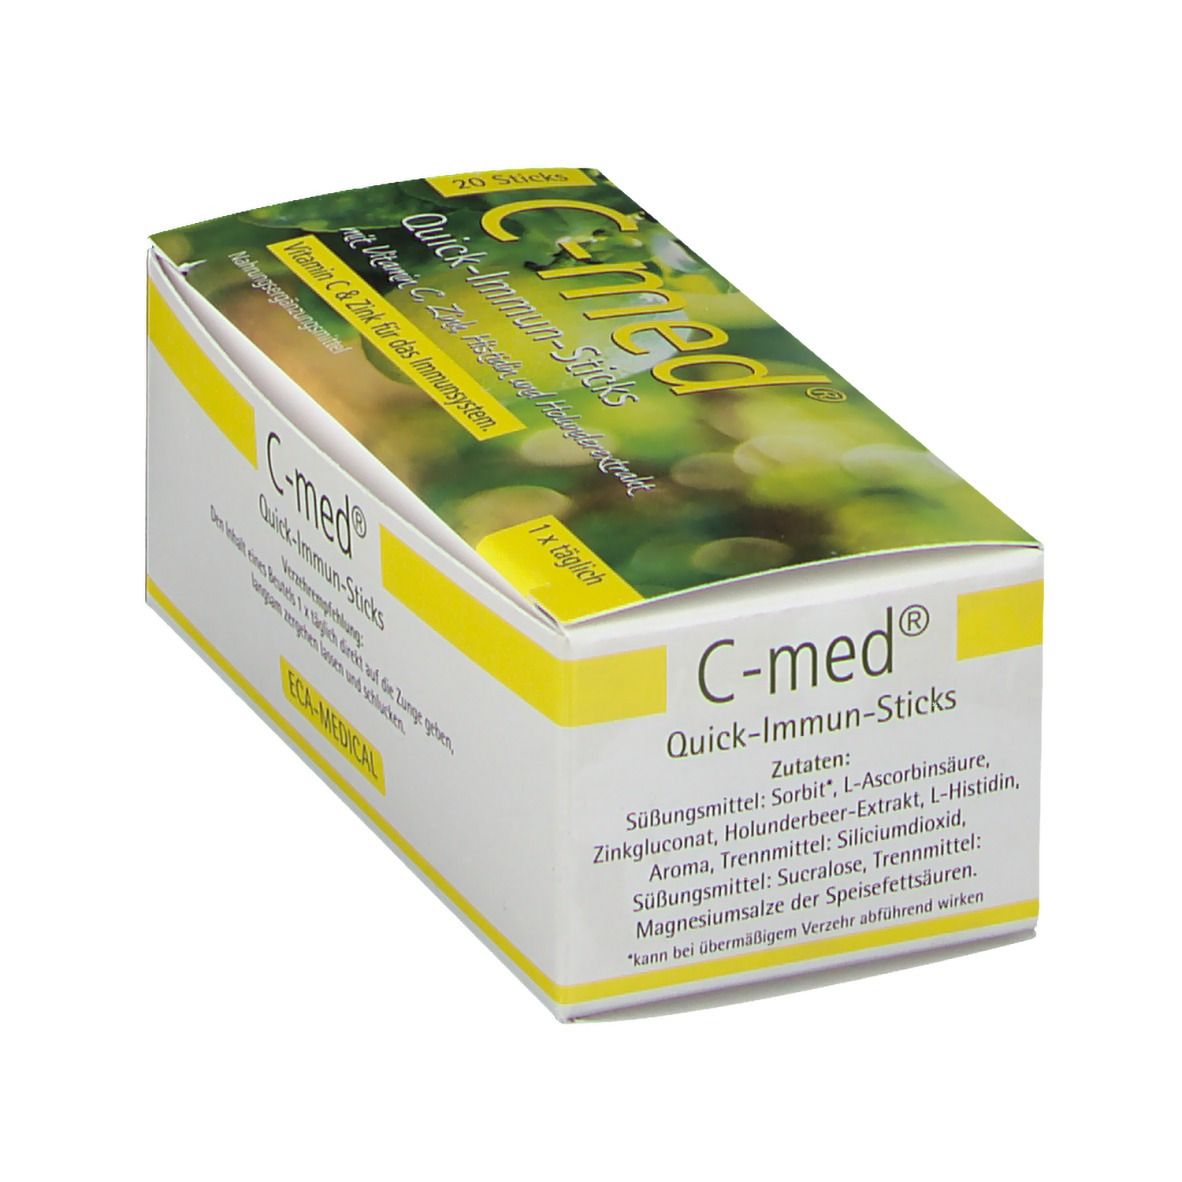 C-MED Quick-Immun-Sticks